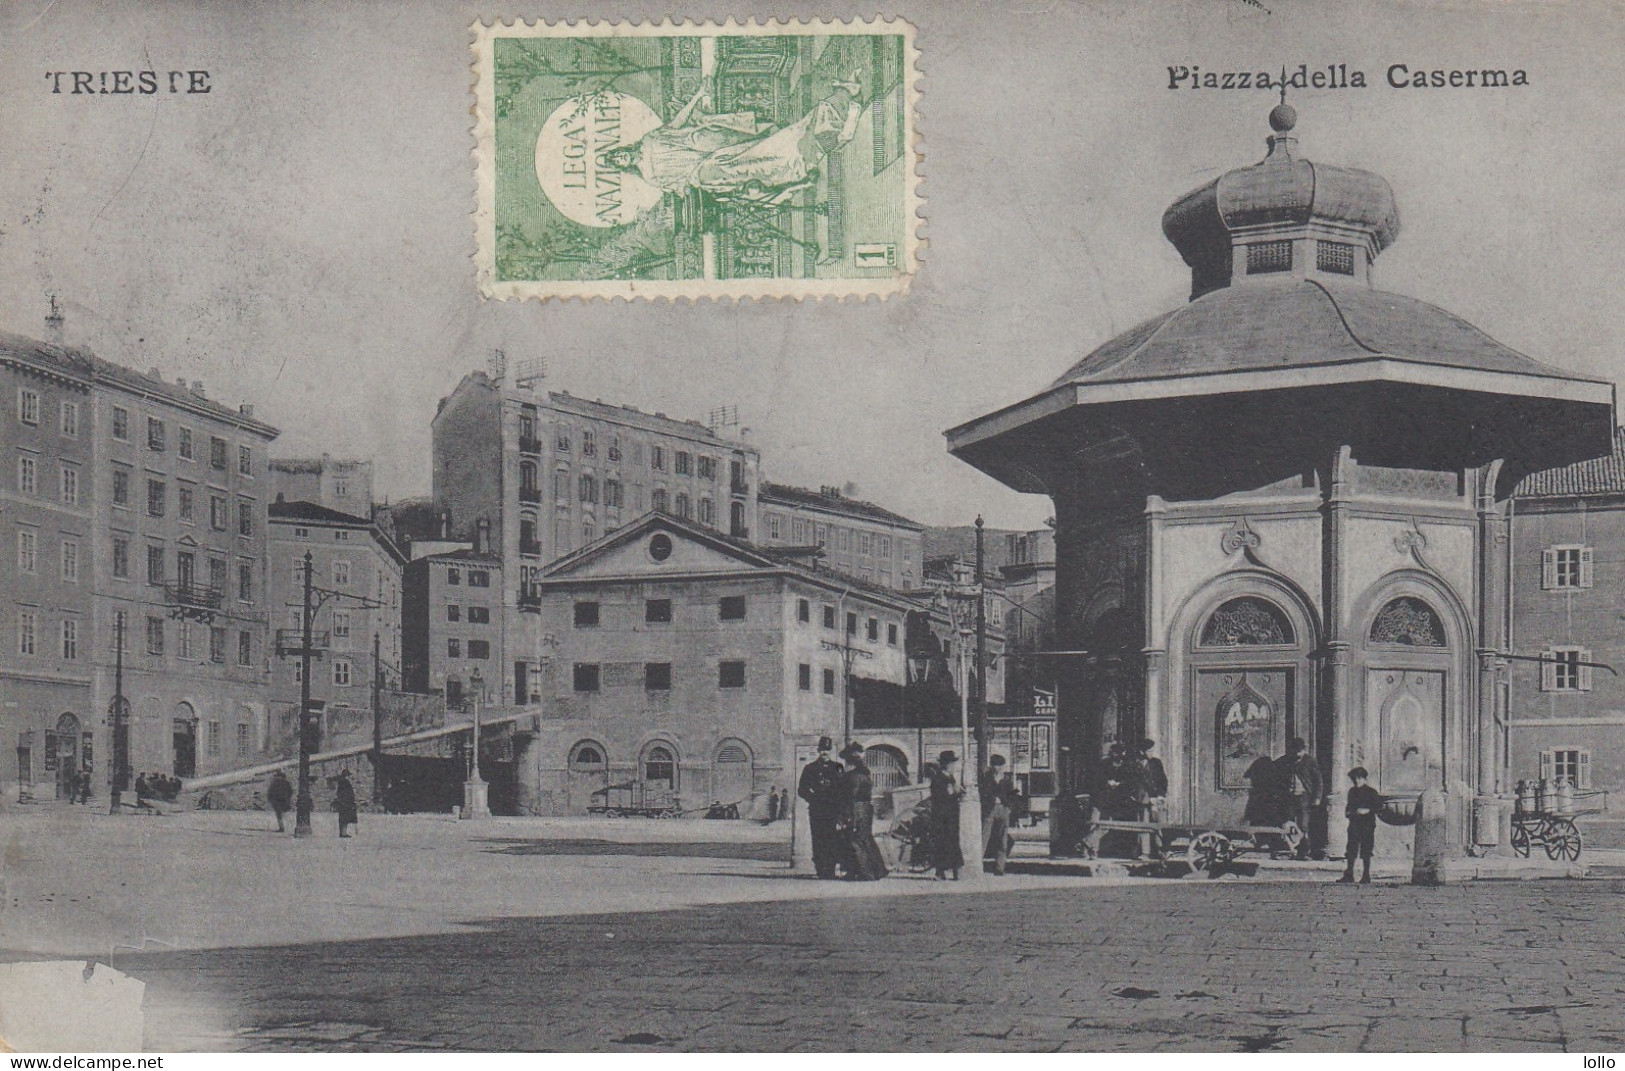 Fiuli Venezia Giulia  -   Trieste  - Piazza Della Caserma   - F. Piccolo  -  Viagg  -  Bella Animata - Insolita - Trieste (Triest)